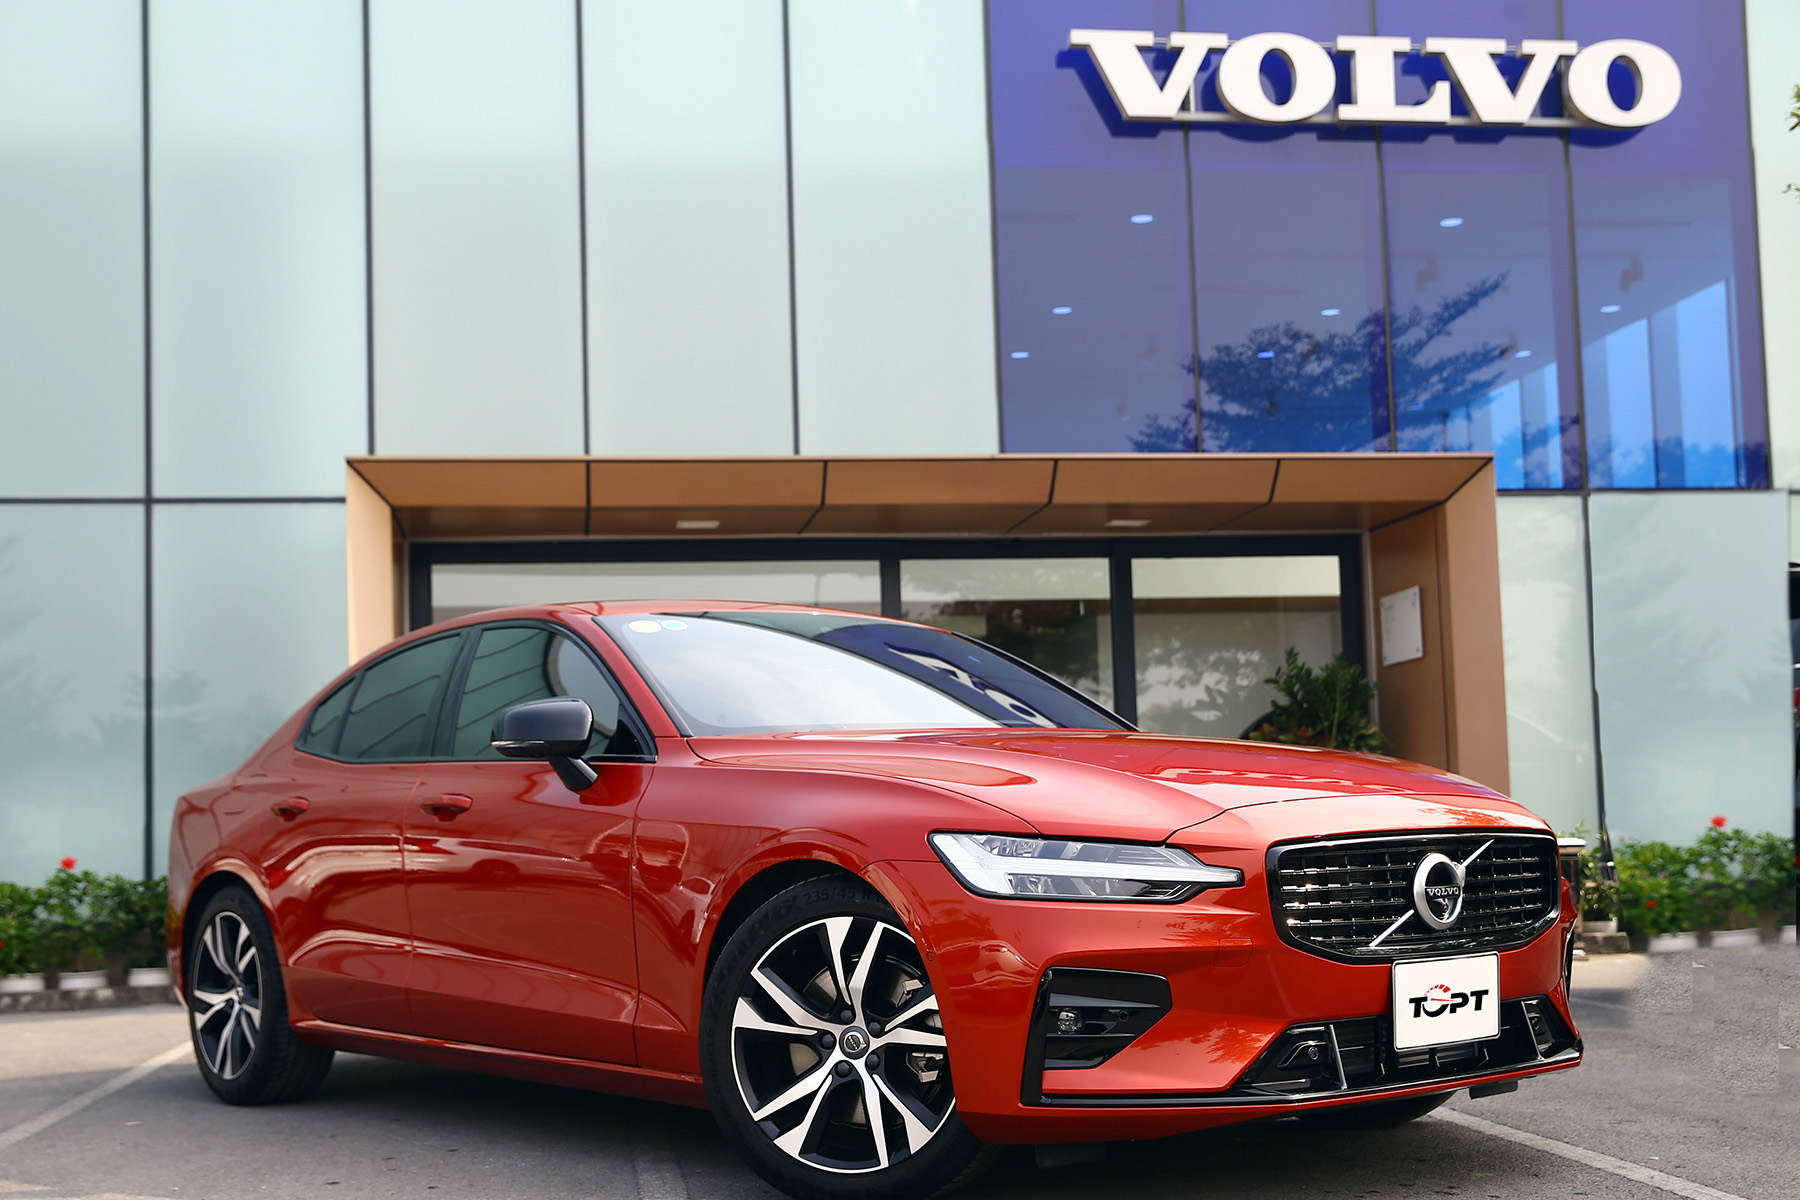 Định giá của Volvo Cars khoảng 16 tỷ USD